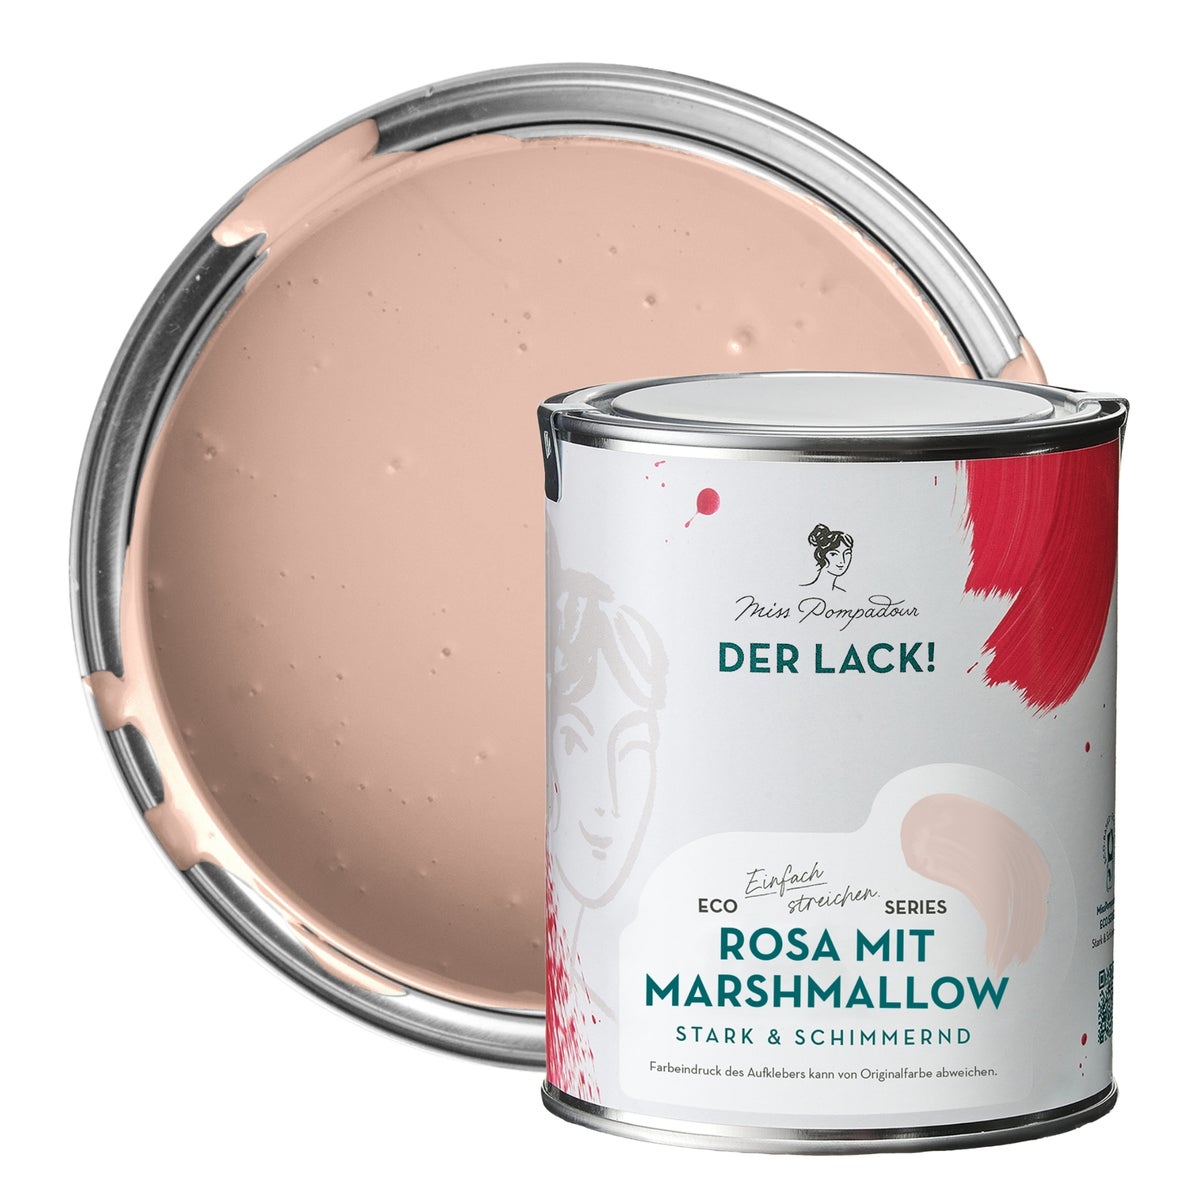 MissPompadour seidenmatte Holzfarbe - Rosa mit Marshmallow - 1 L, Möbelfarbe ohne Schleifen - Farbe für Holz, Metall, Kunststoff - Holzlack, Möbellack schnelltrocknend mit hoher Deckkraft